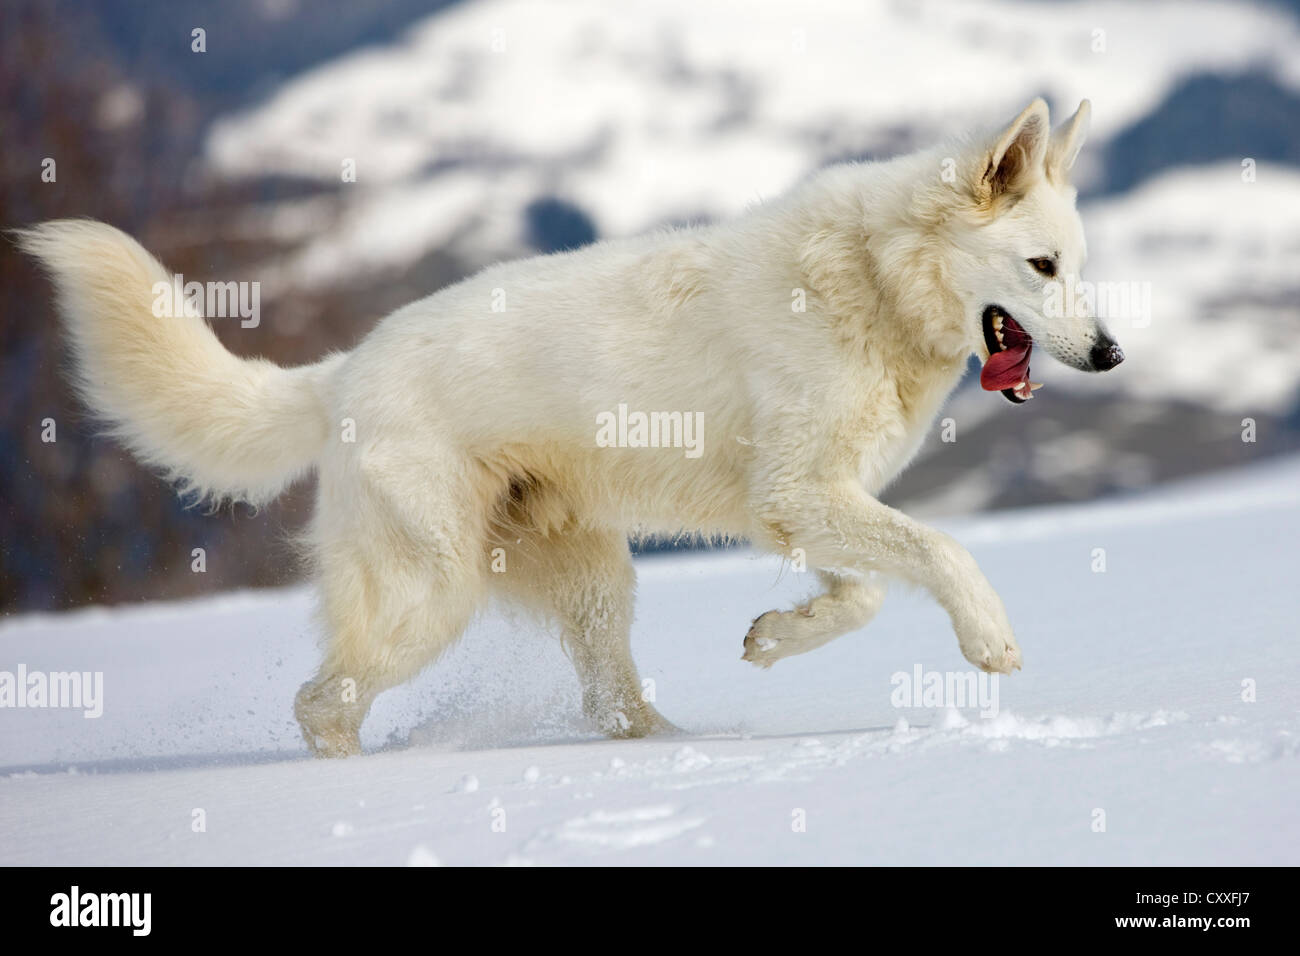 Berger Blanc chien qui court sur la neige, Tyrol du Nord, l'Autriche, Europe Banque D'Images